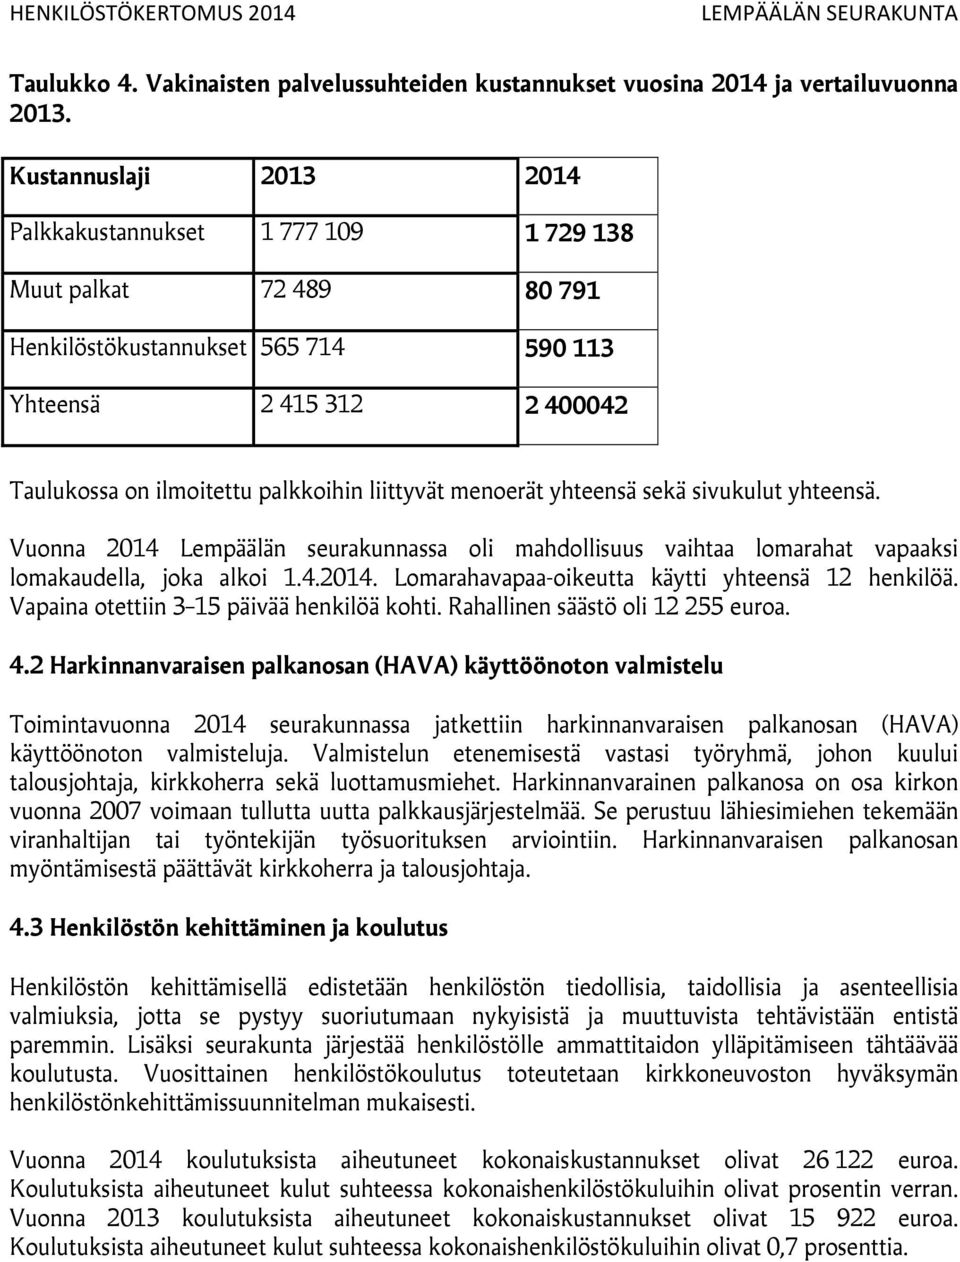 liittyvät menoerät yhteensä sekä sivukulut yhteensä. Vuonna 2014 Lempäälän seurakunnassa oli mahdollisuus vaihtaa lomarahat vapaaksi lomakaudella, joka alkoi 1.4.2014. Lomarahavapaa-oikeutta käytti yhteensä 12 henkilöä.